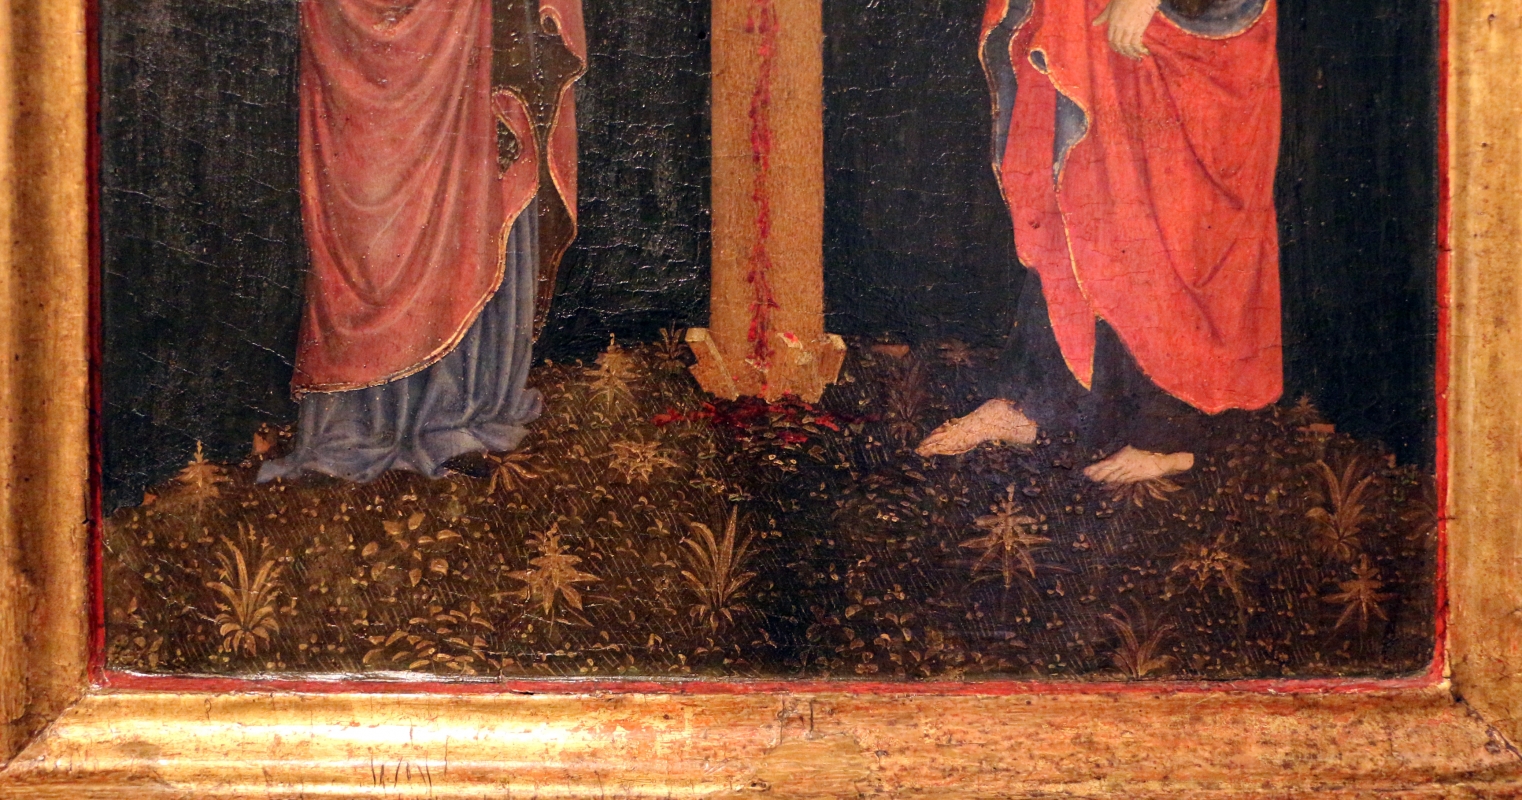 Giovan francesco da rimini, crocifissione, 1450-70 ca. 03 prato - Sailko